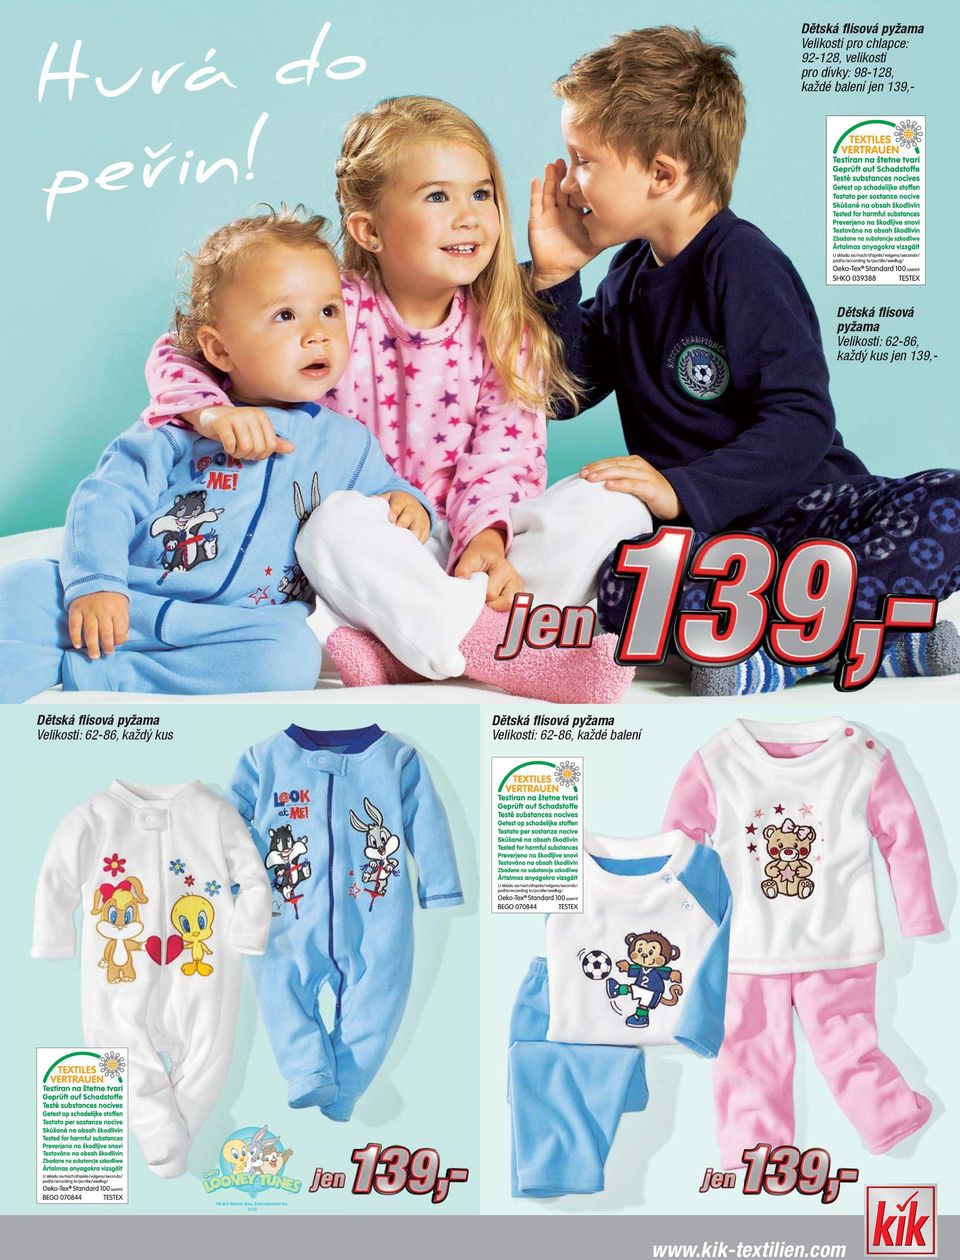 Dětská flísová pyžama Velikosti: 62-86, jen 139,- Dětská flísová